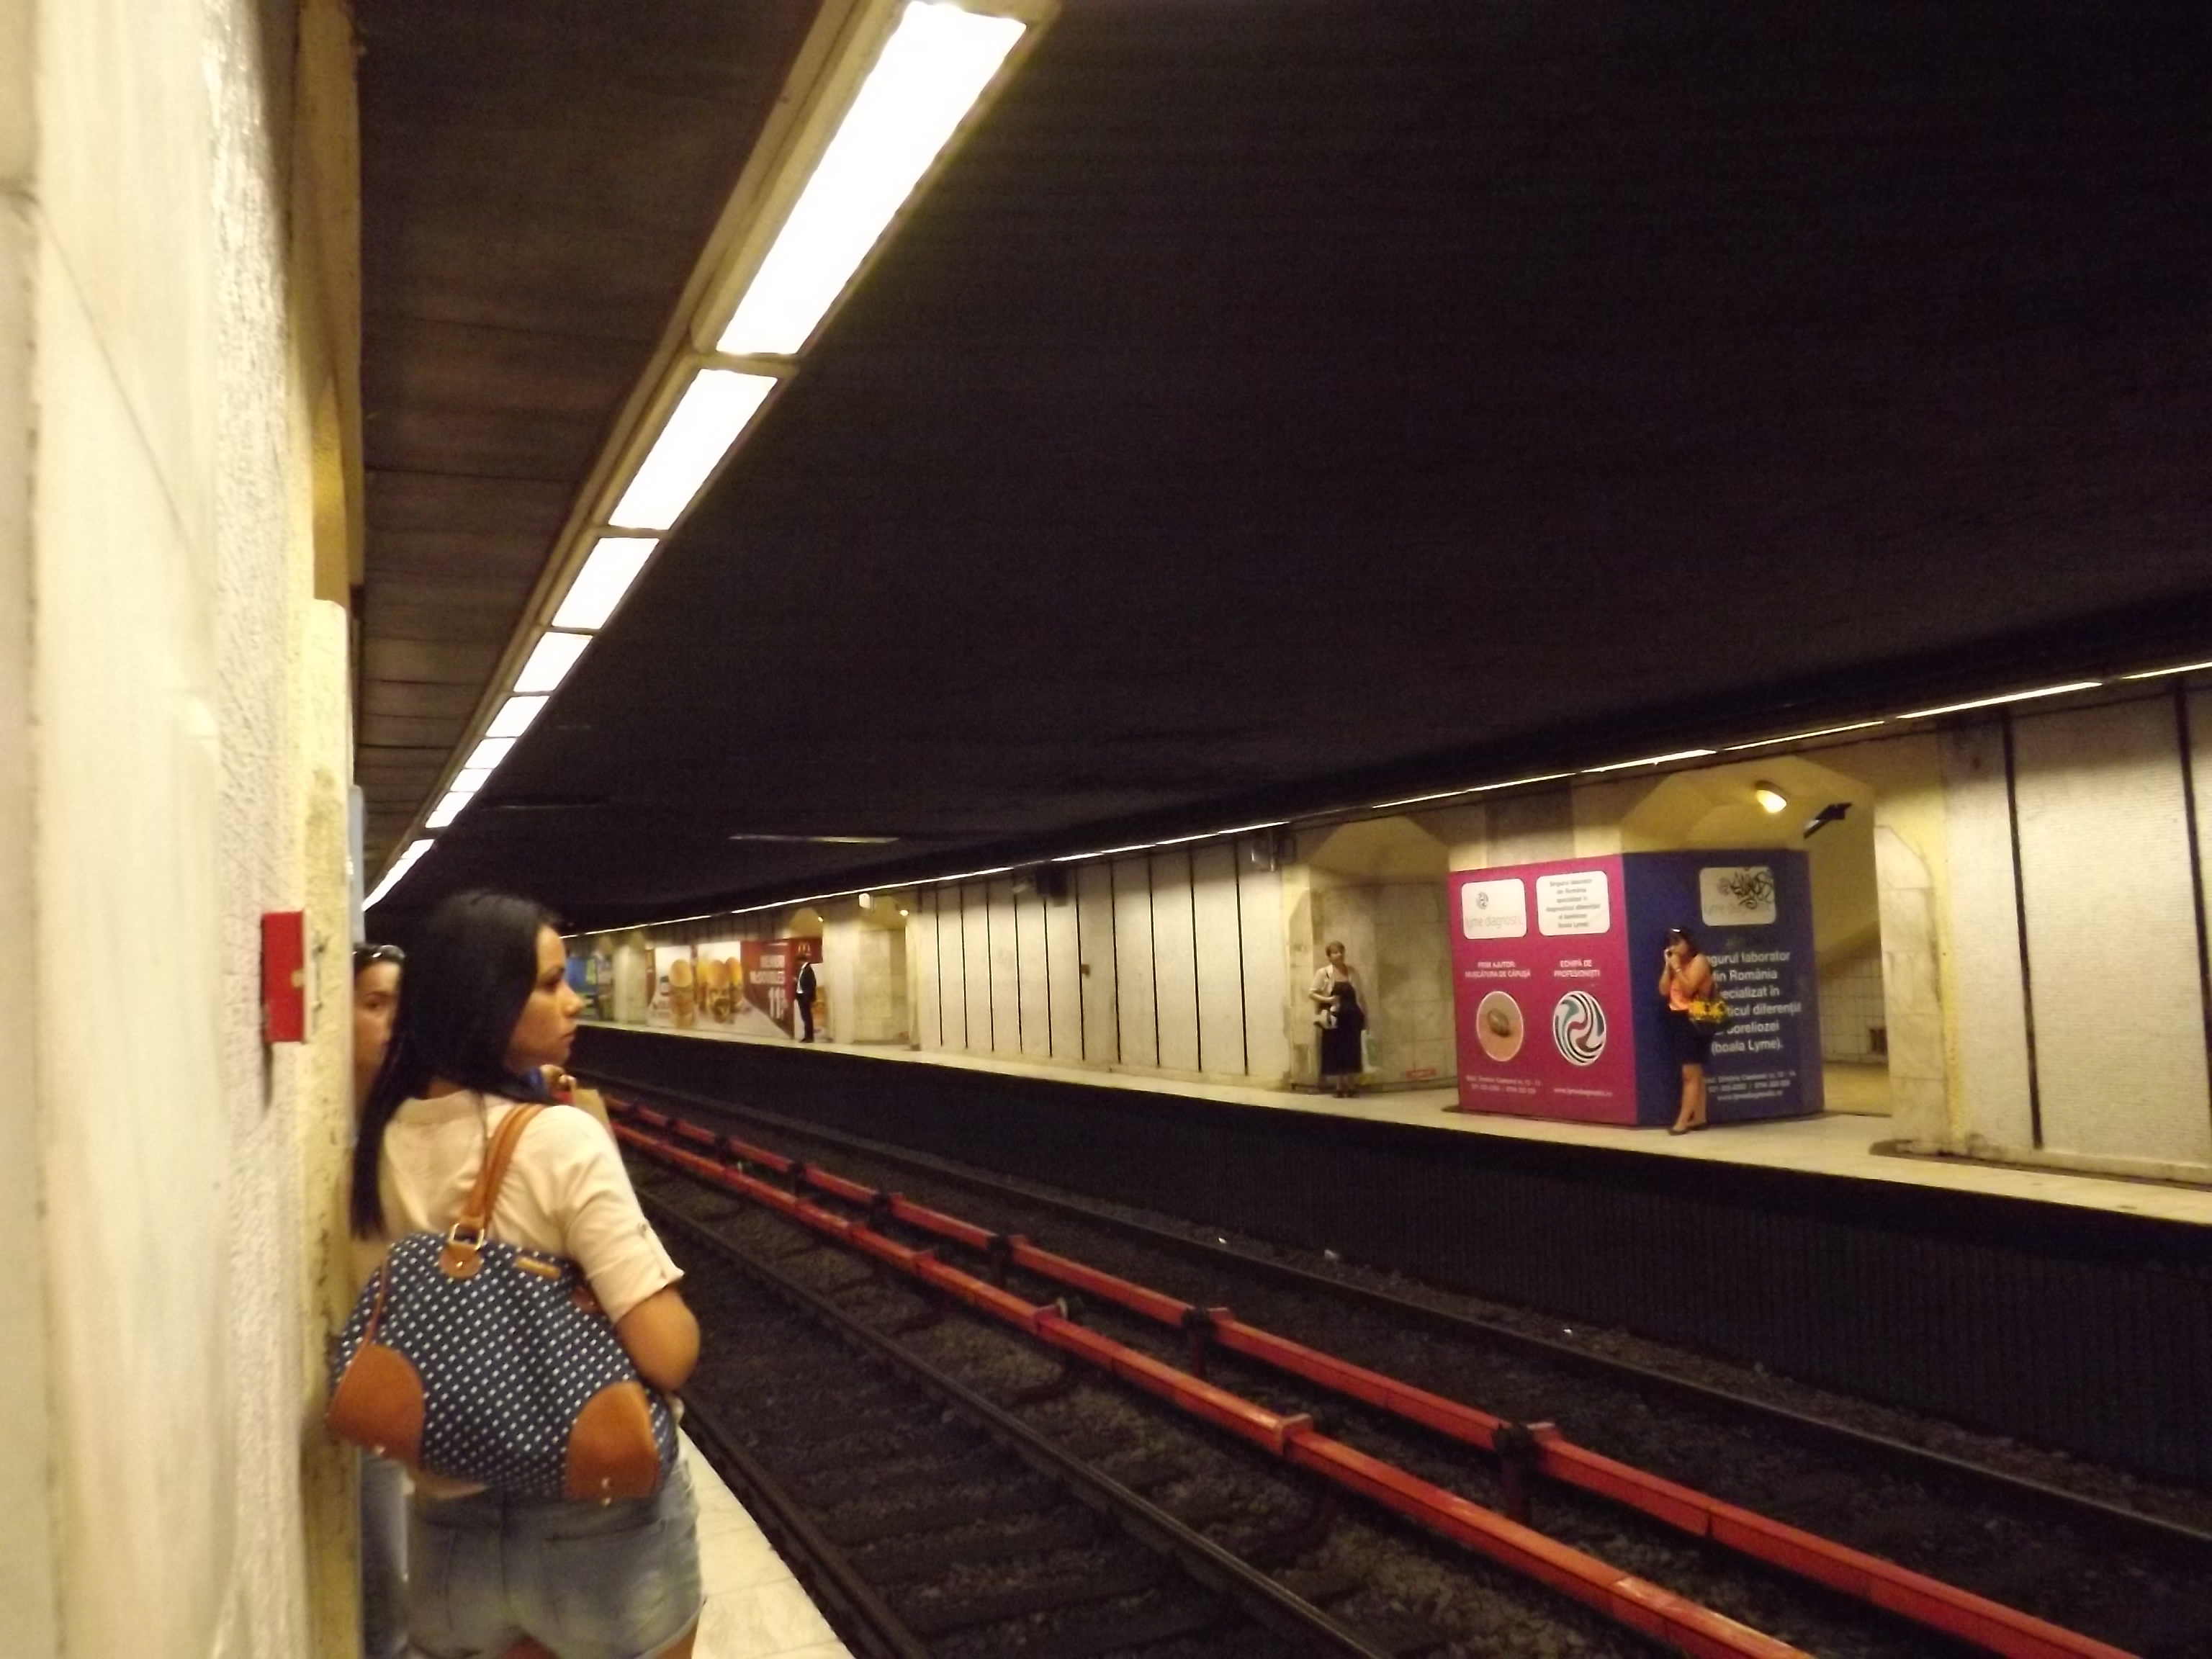 Római tér metróállomás az M2-es vonalon. A titokban épült megálló jellegzetessége a veszélyesen keskeny, háromnegyed méter széles peron. </br> A kivágással még keskenyebbé vált...